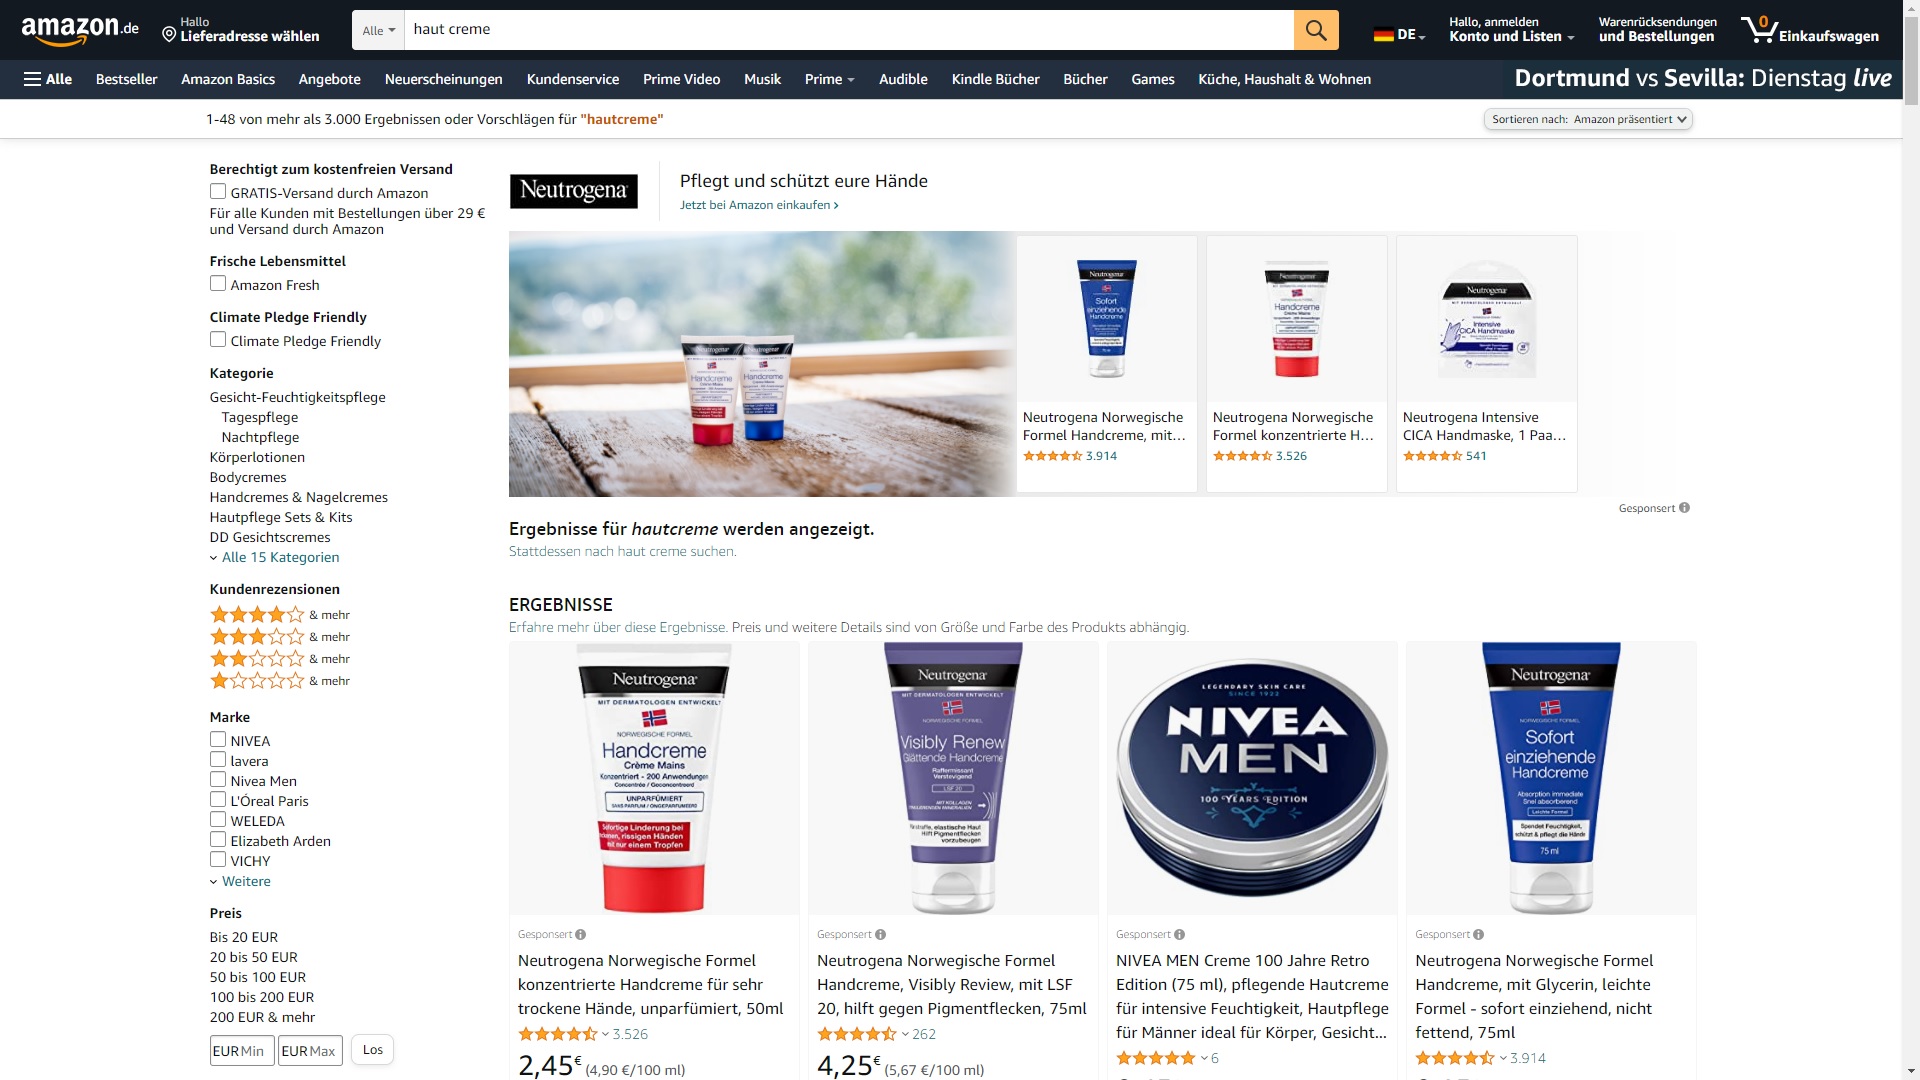 Das Bild zeigt die Amazon-Suche in der nach "haut creme" gesucht wurde und illustriert, dass die Verpackung von Nivea deutlich hervorsticht.